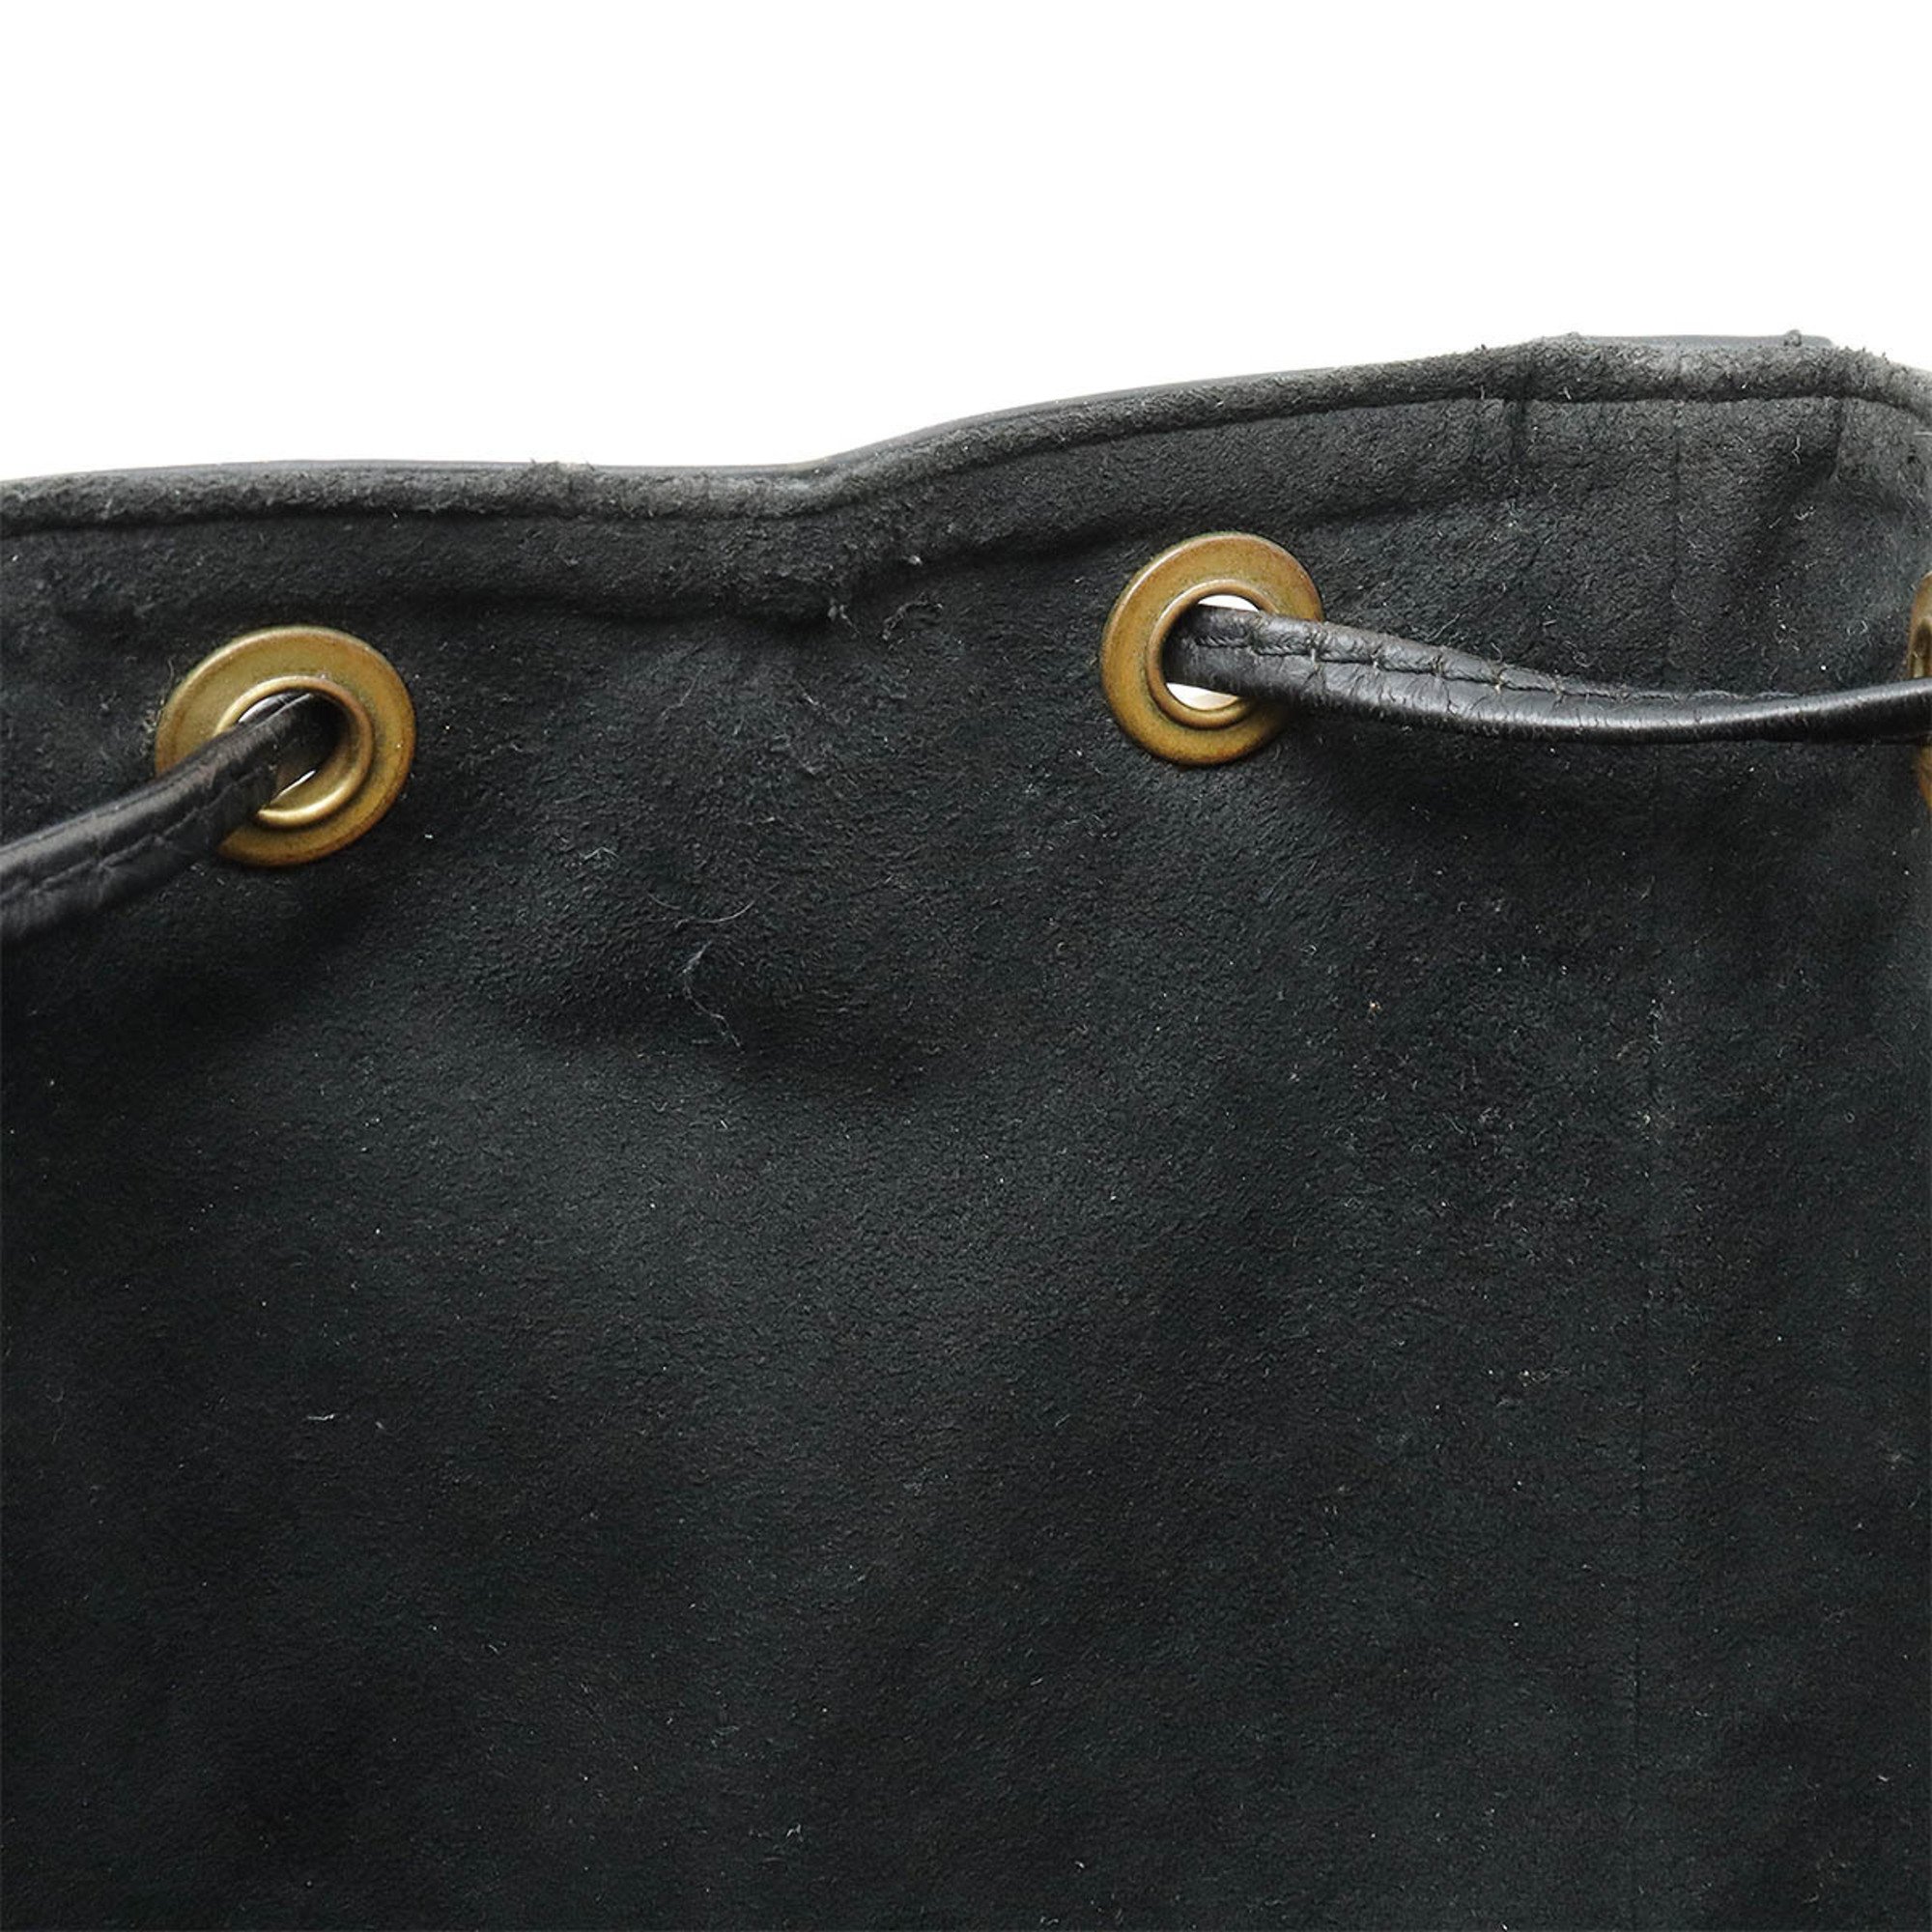 LOUIS VUITTON Louis Vuitton Epi Petit Noe Shoulder Bag Soft Leather Noir Black M59012